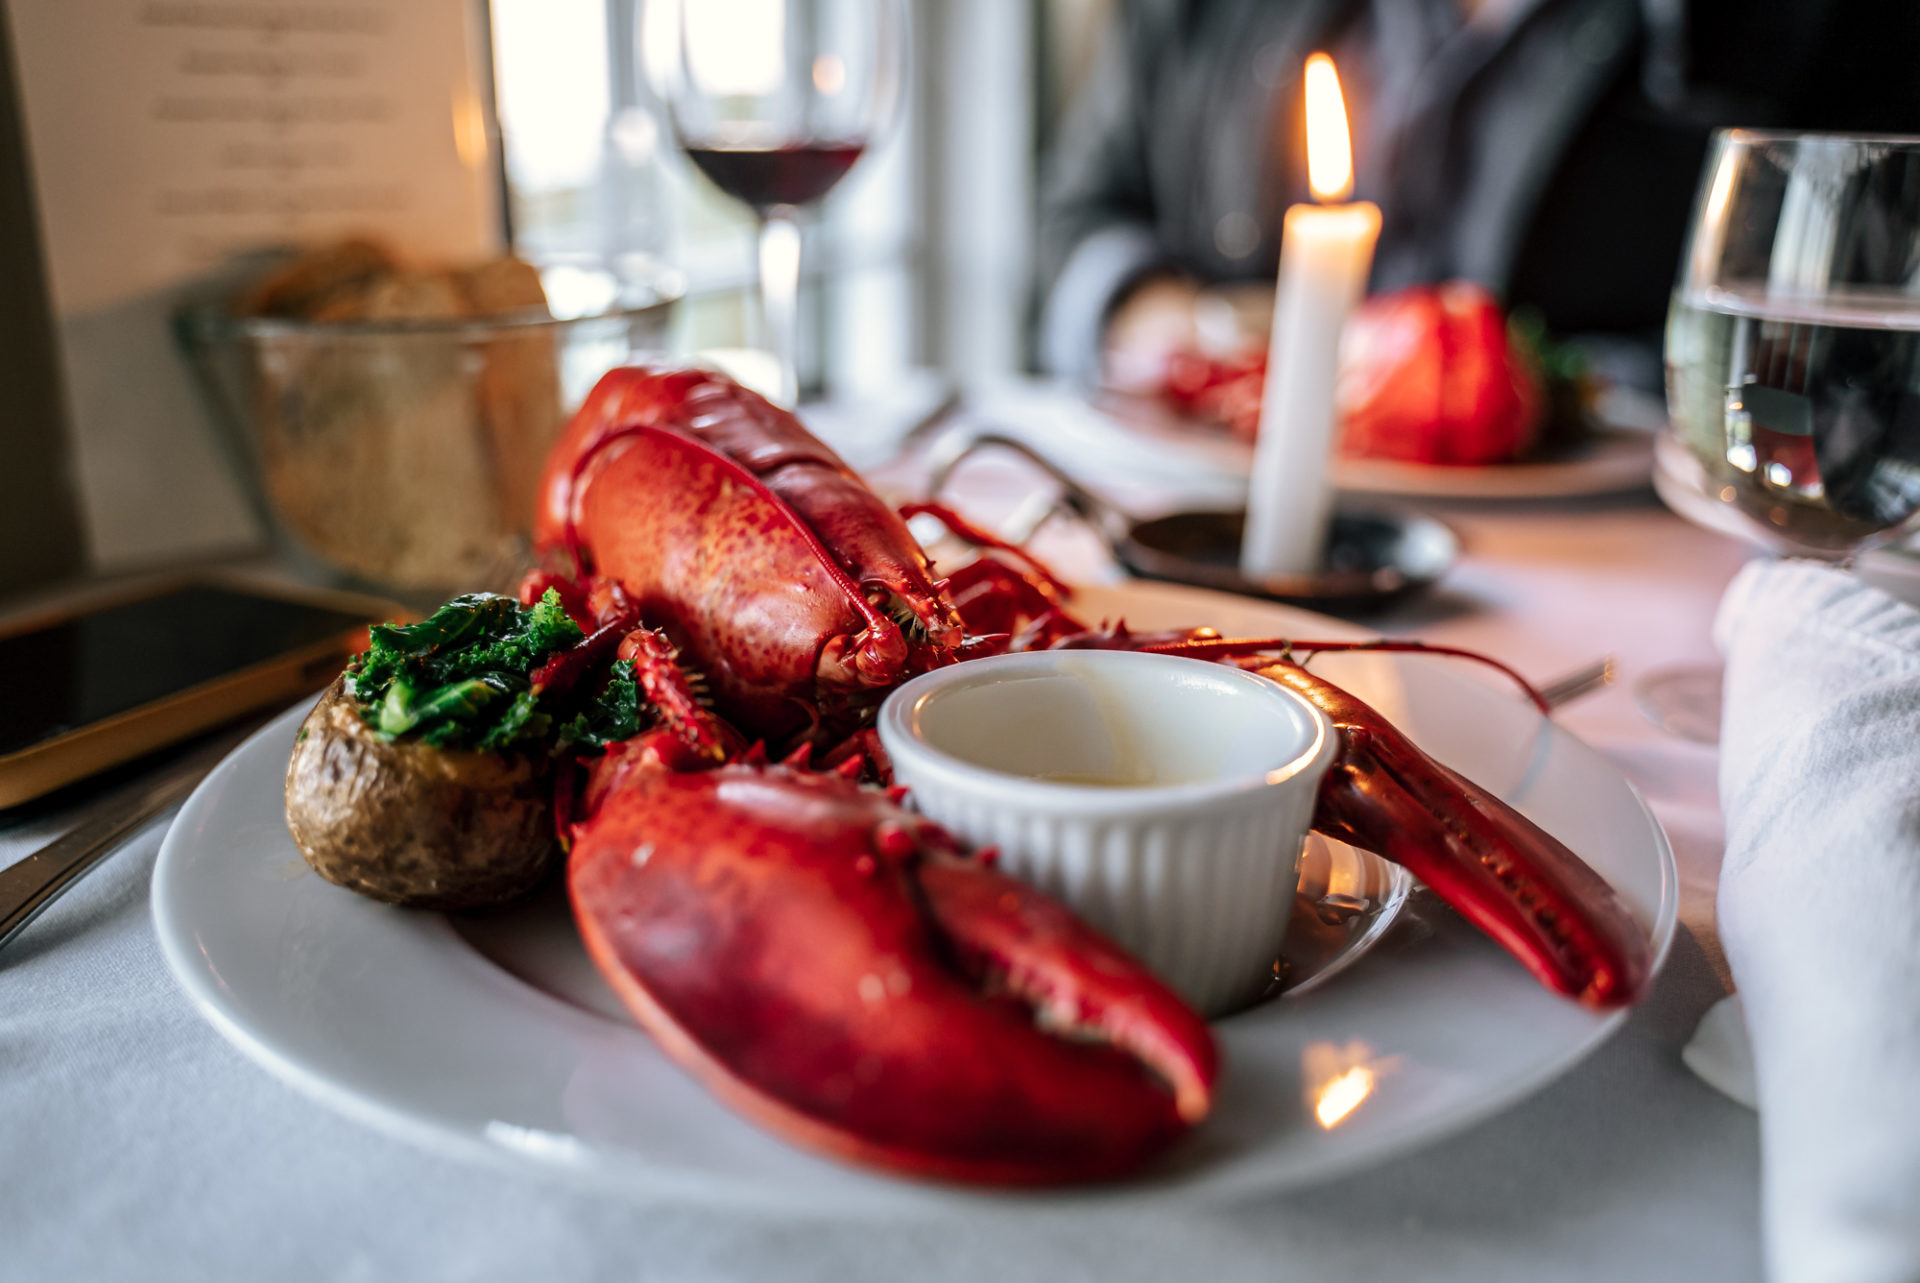 Lobster meal at Fishers Loft Restaurant in Port Rexton, Bonavista Peninsula